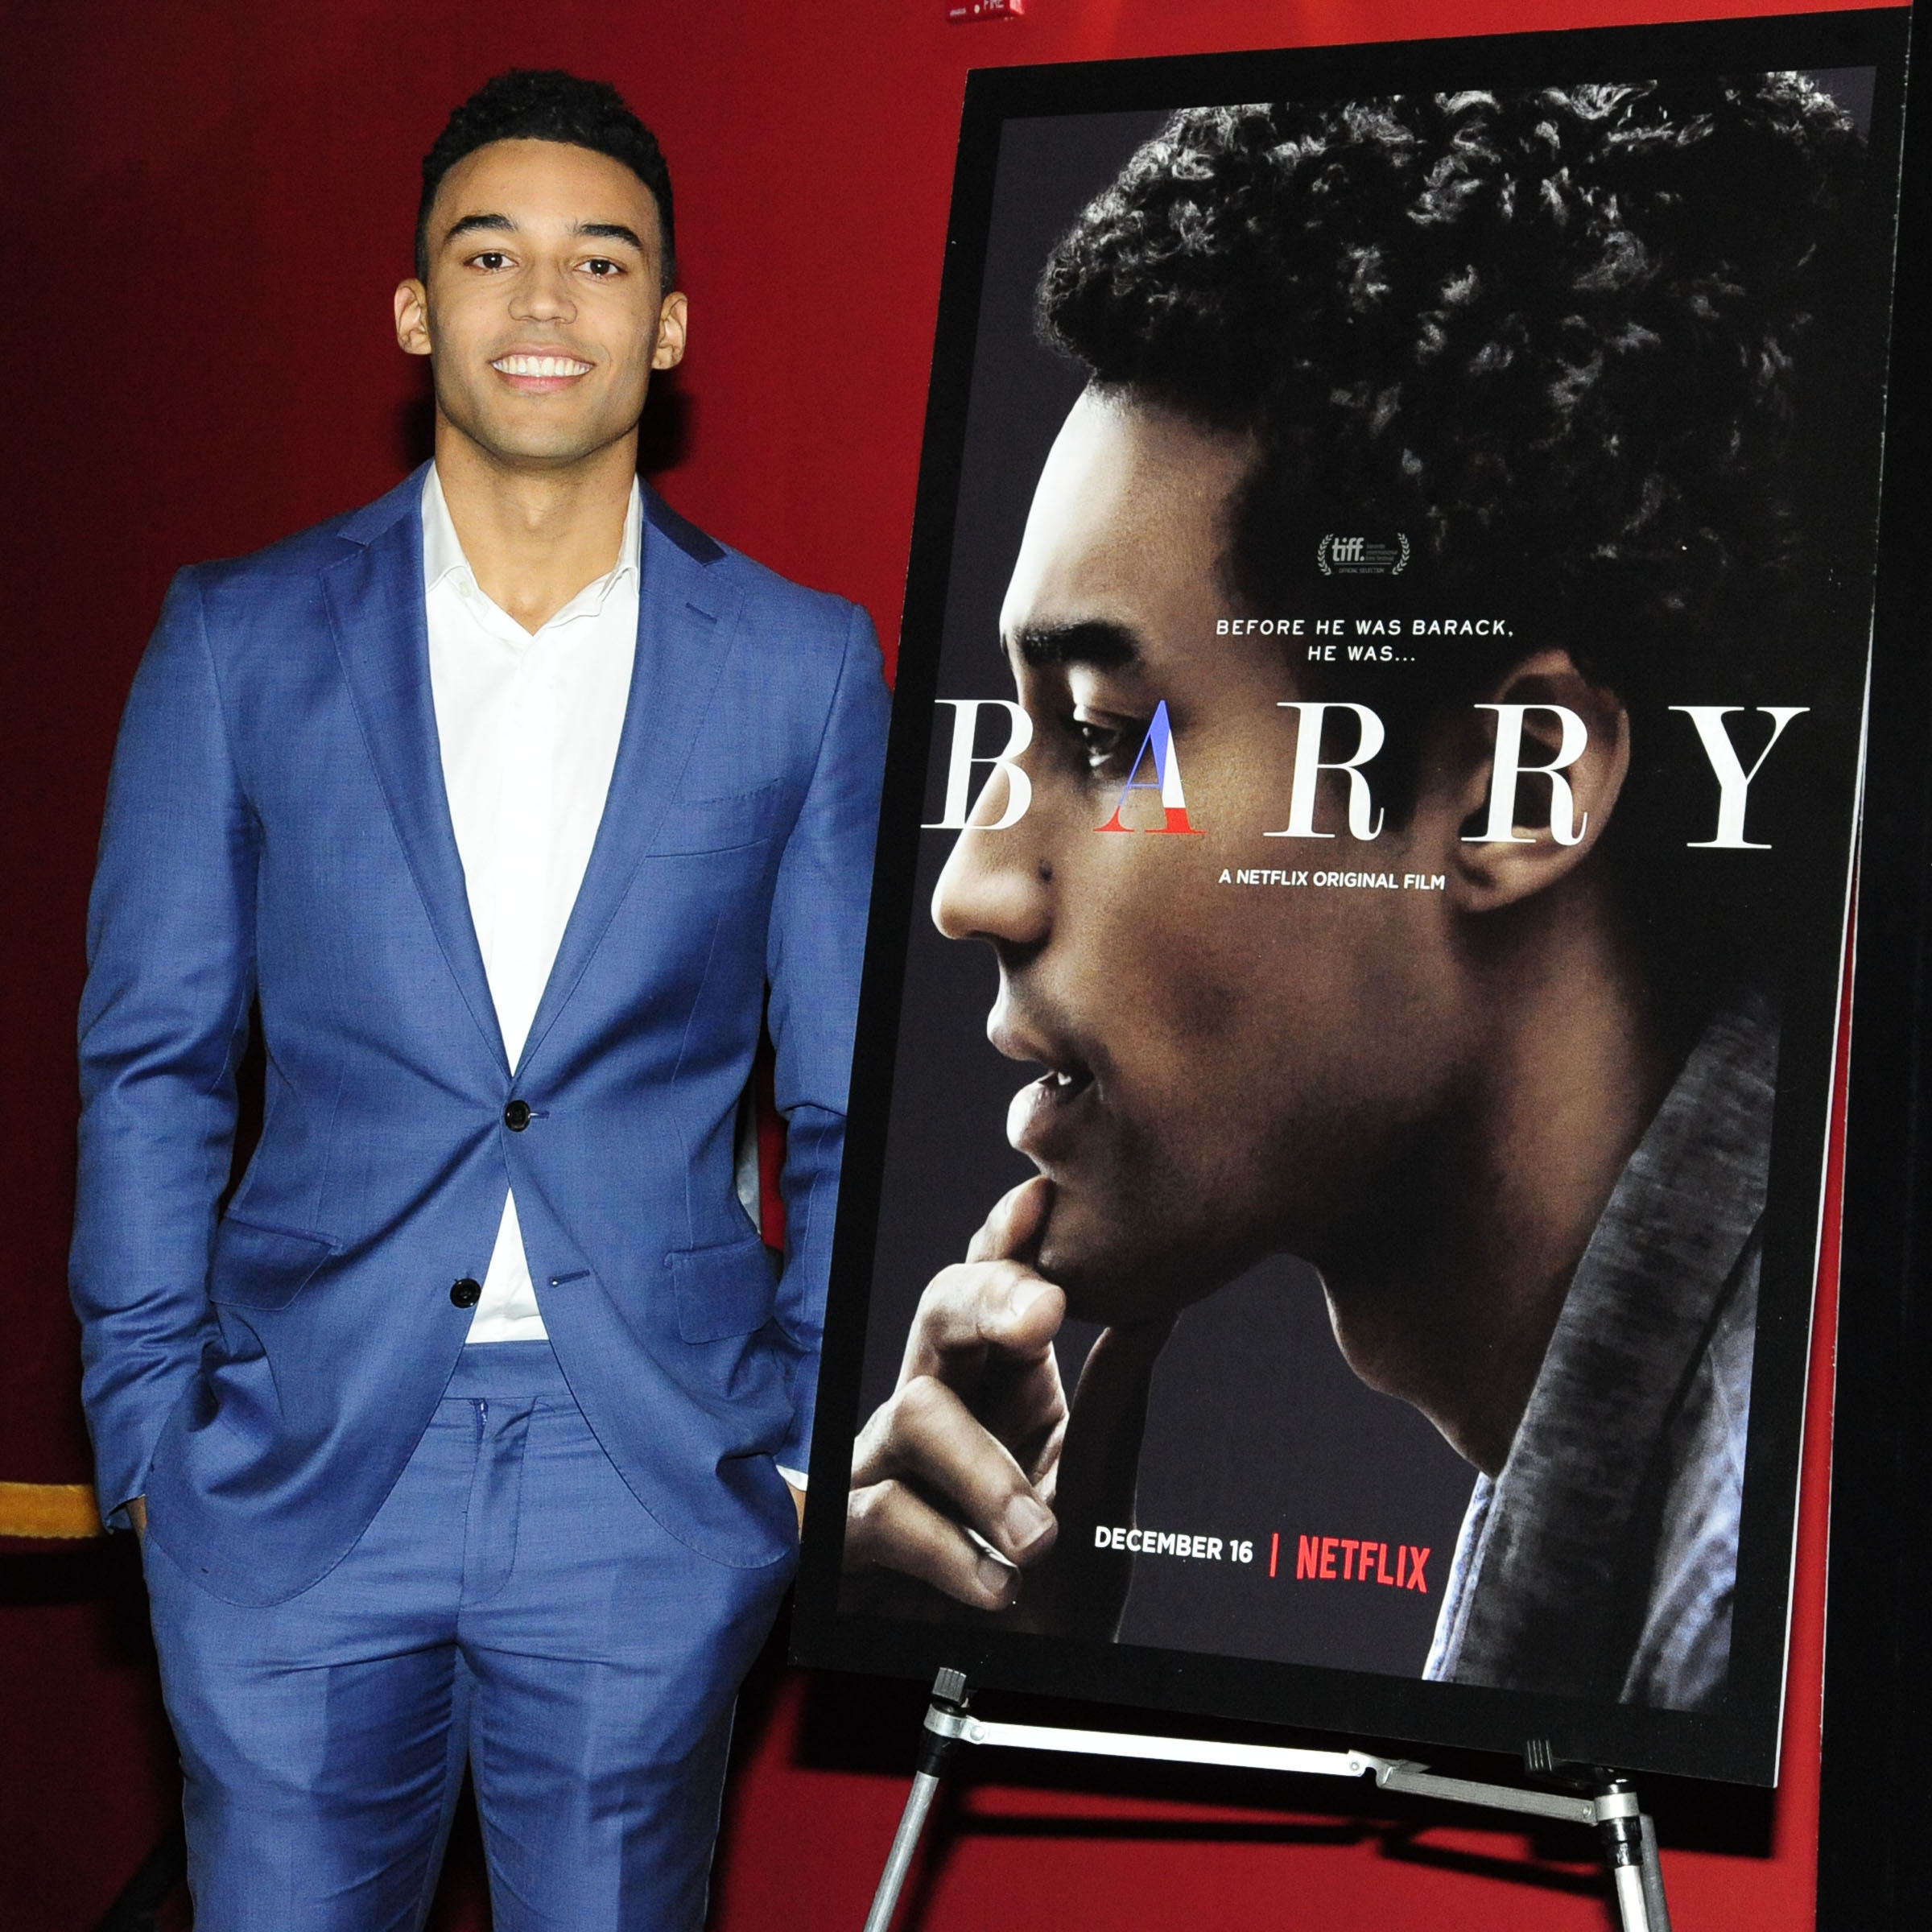 Netflix Hosts a Screening of 'Barry'